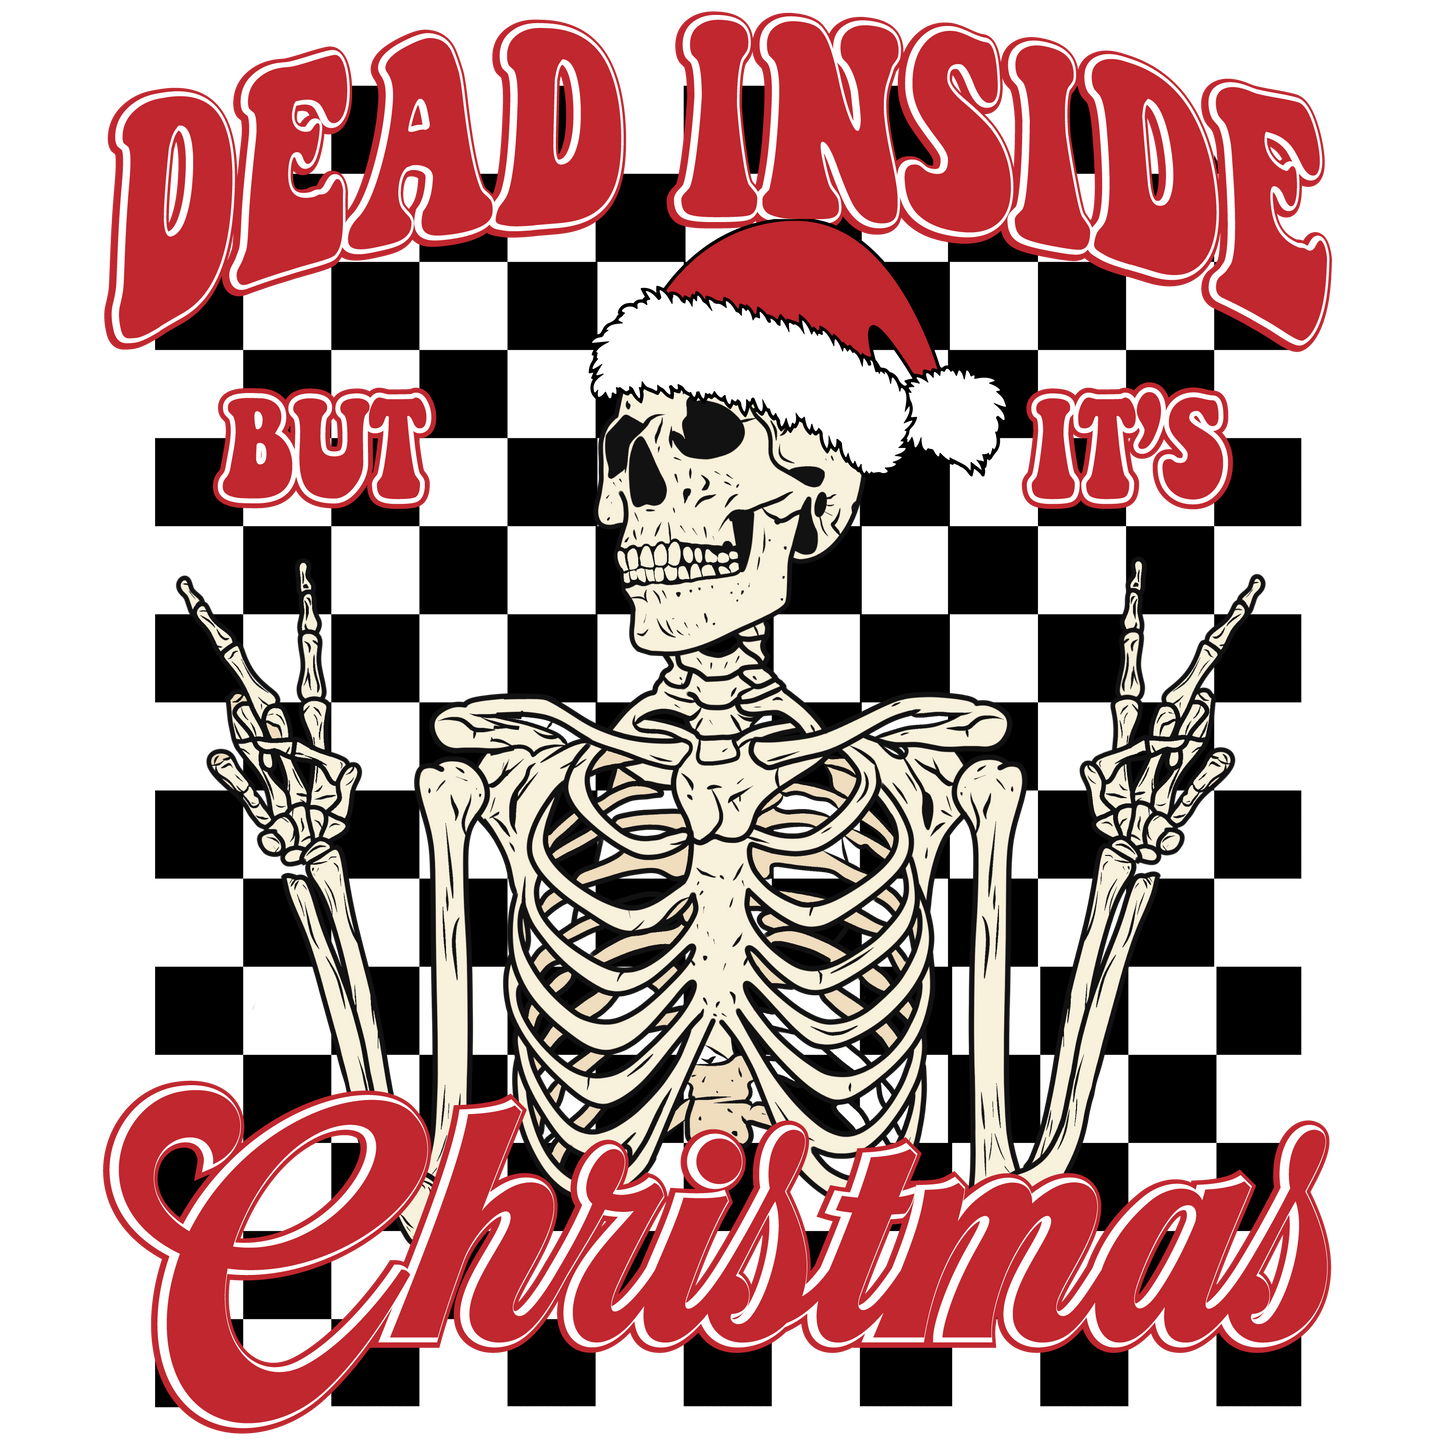 Dead inside but it's Christmas